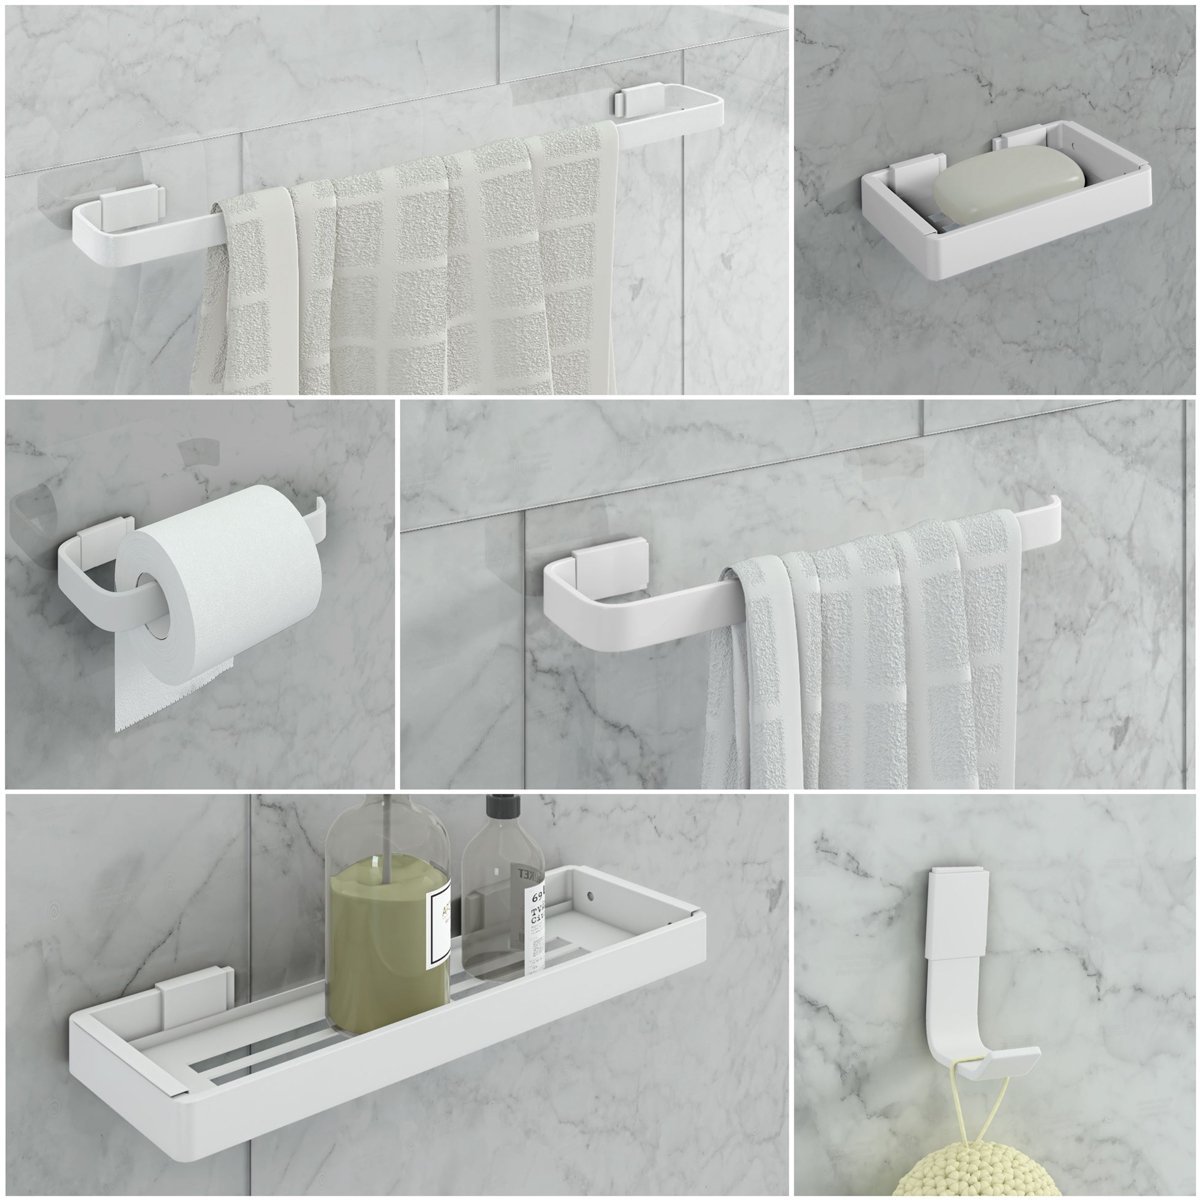 Kit de Acessórios para Banheiro 6 Peças Stander:branco - 1